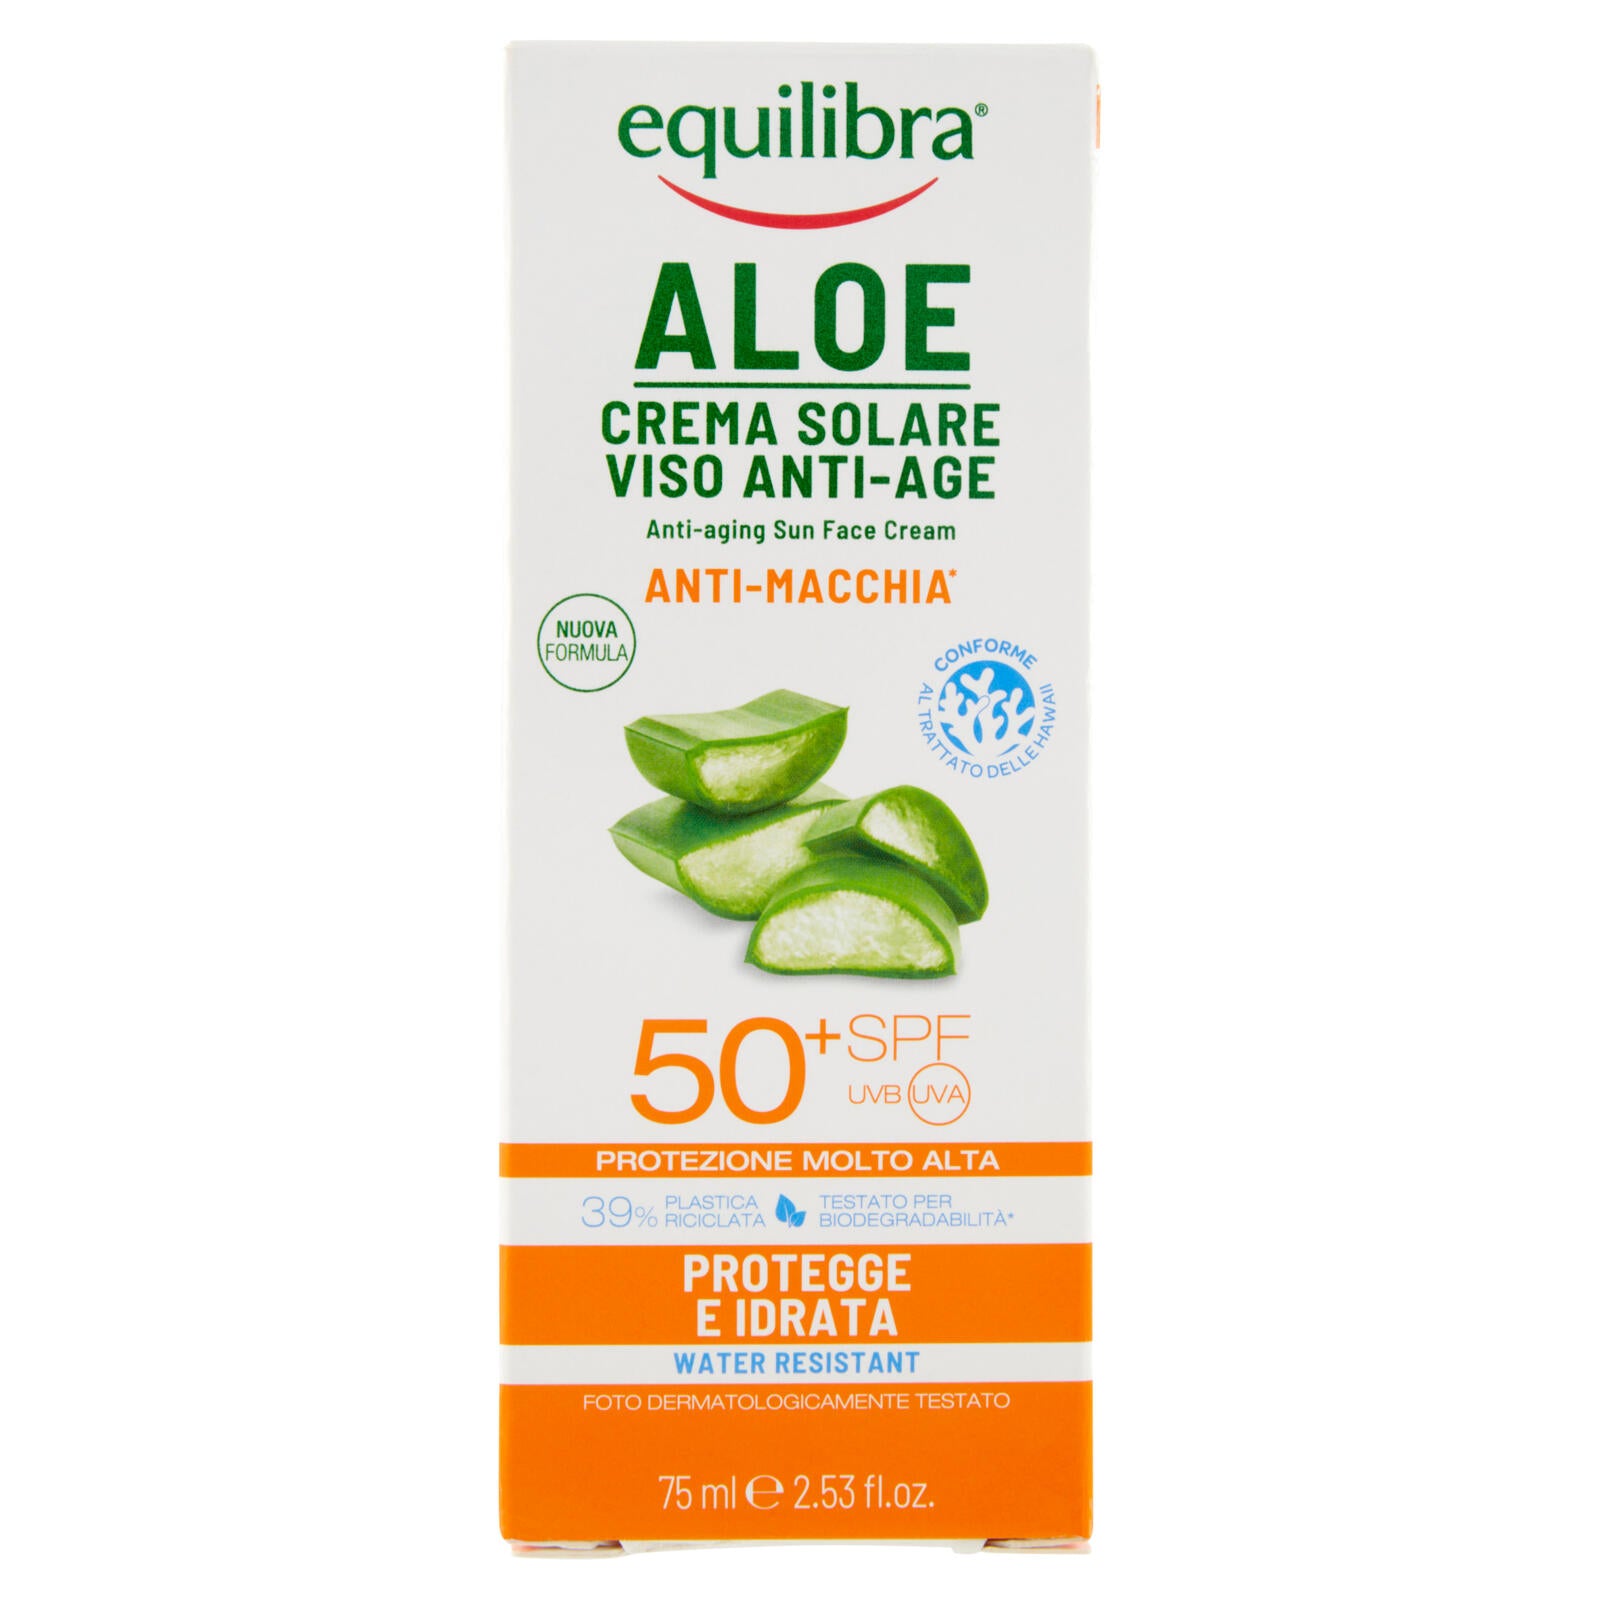 equilibra Aloe Crema Solare Viso Anti-Age 50⁺ SPF Protezione Molto Alta 75 ml